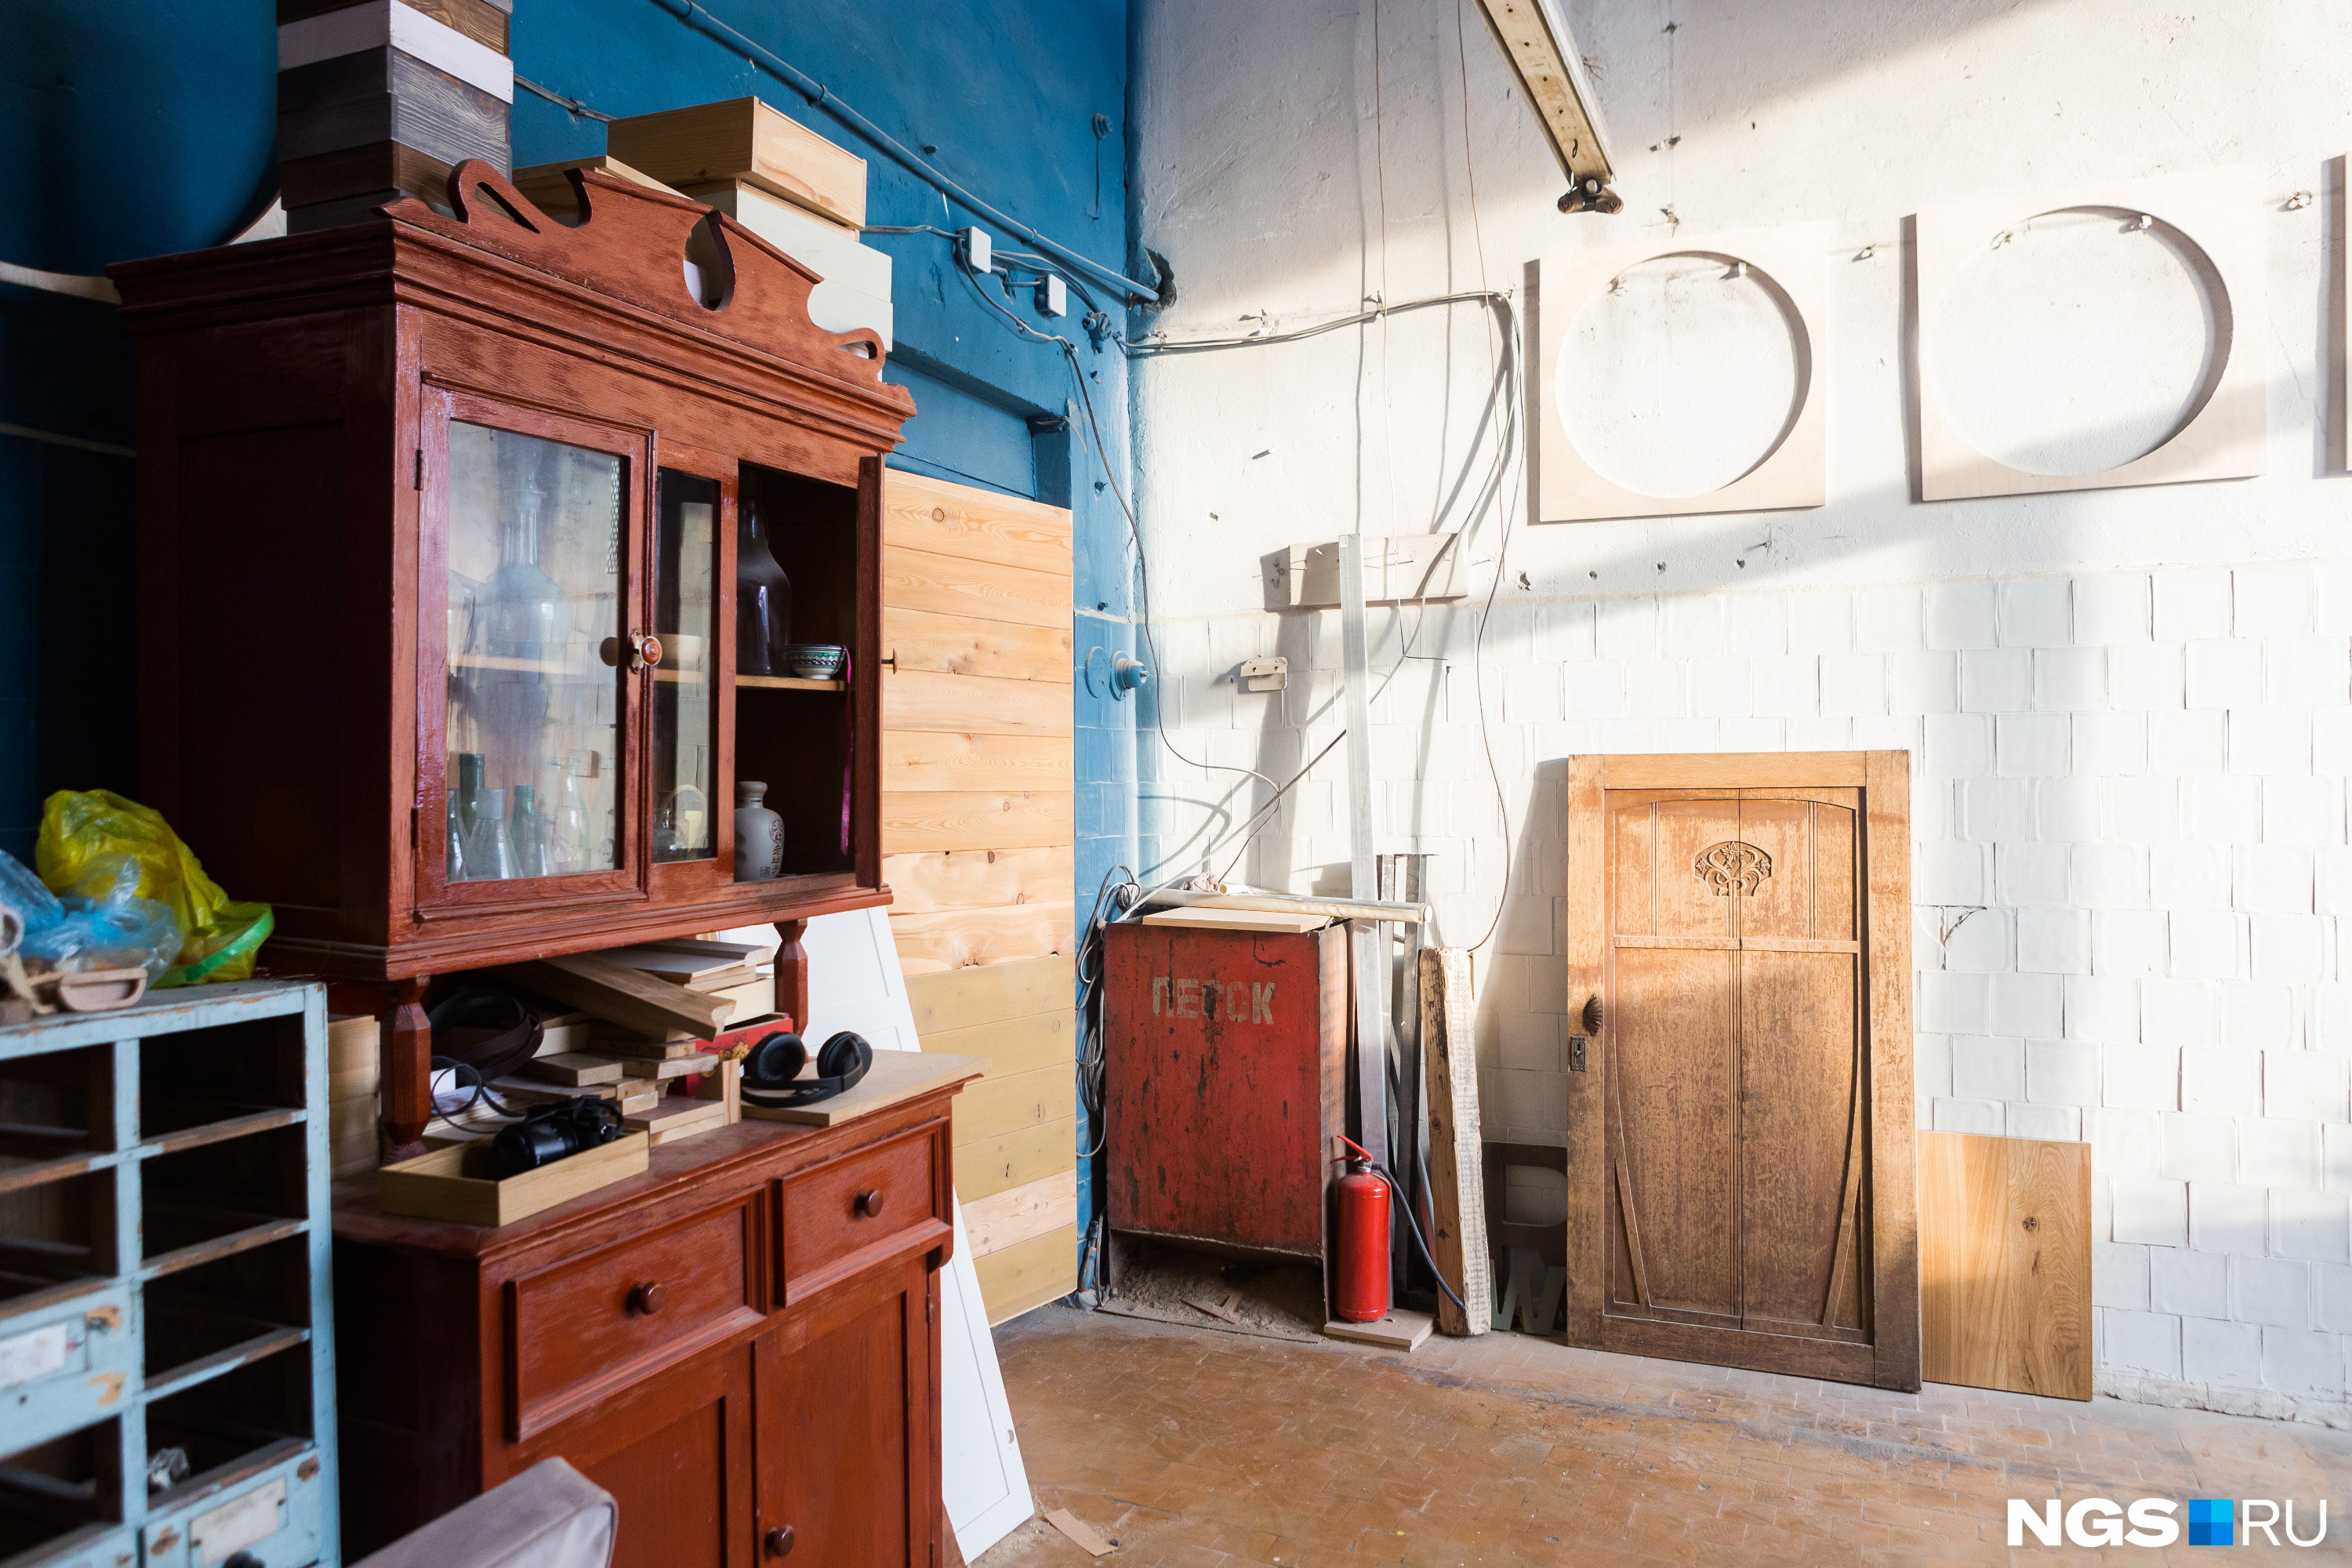 В их мастерской стоит ещё и старая мебель, которую они хотят отреставрировать или применить в каком-нибудь проекте